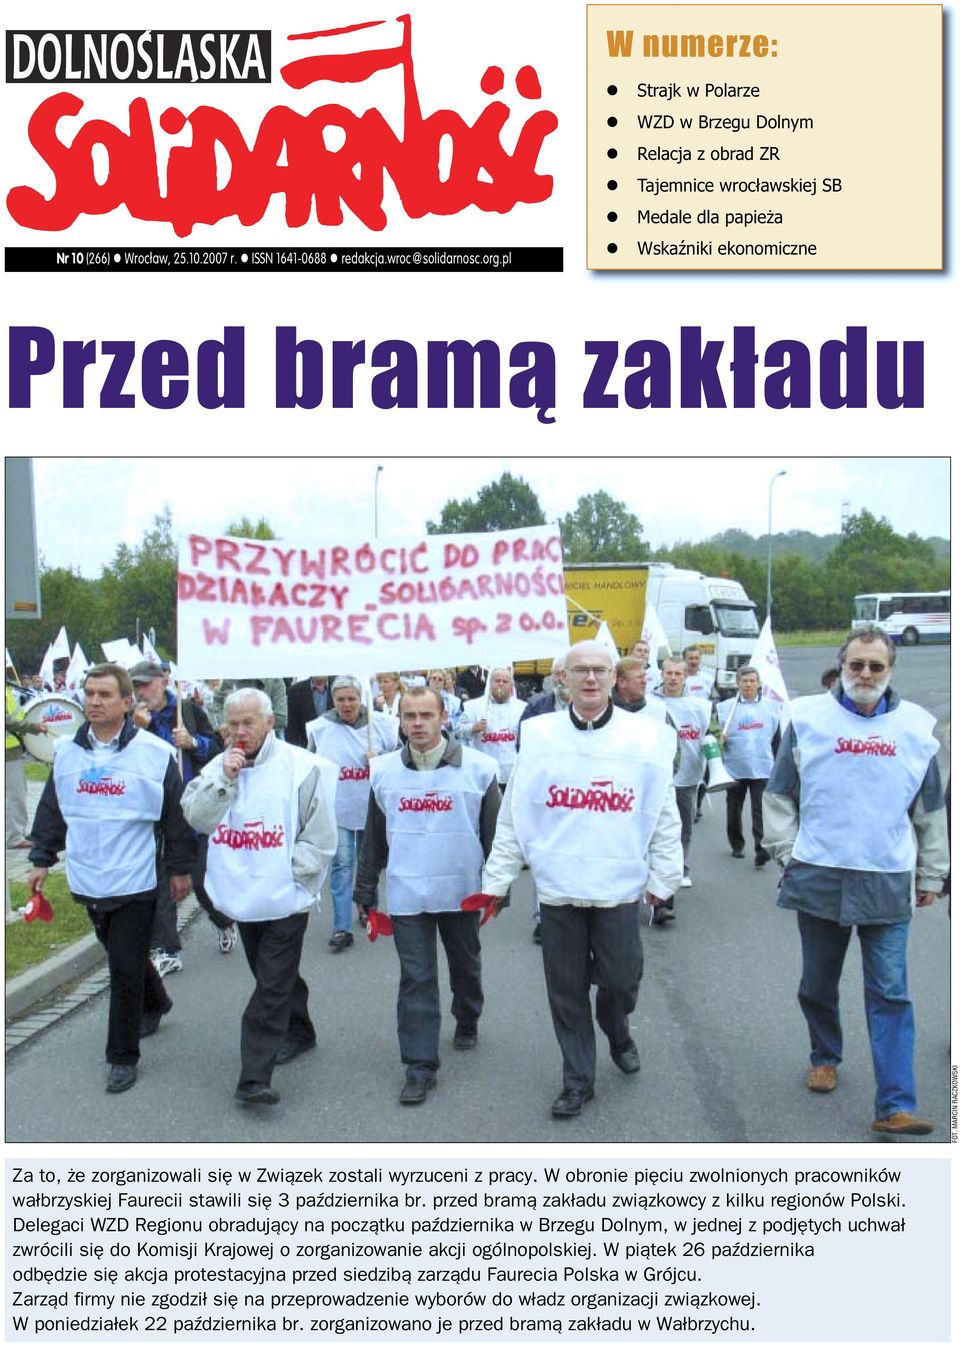 zostali wyrzuceni z pracy. W obronie pięciu zwolnionych pracowników wałbrzyskiej Faurecii stawili się 3 października br. przed bramą zakładu związkowcy z kilku regionów Polski.